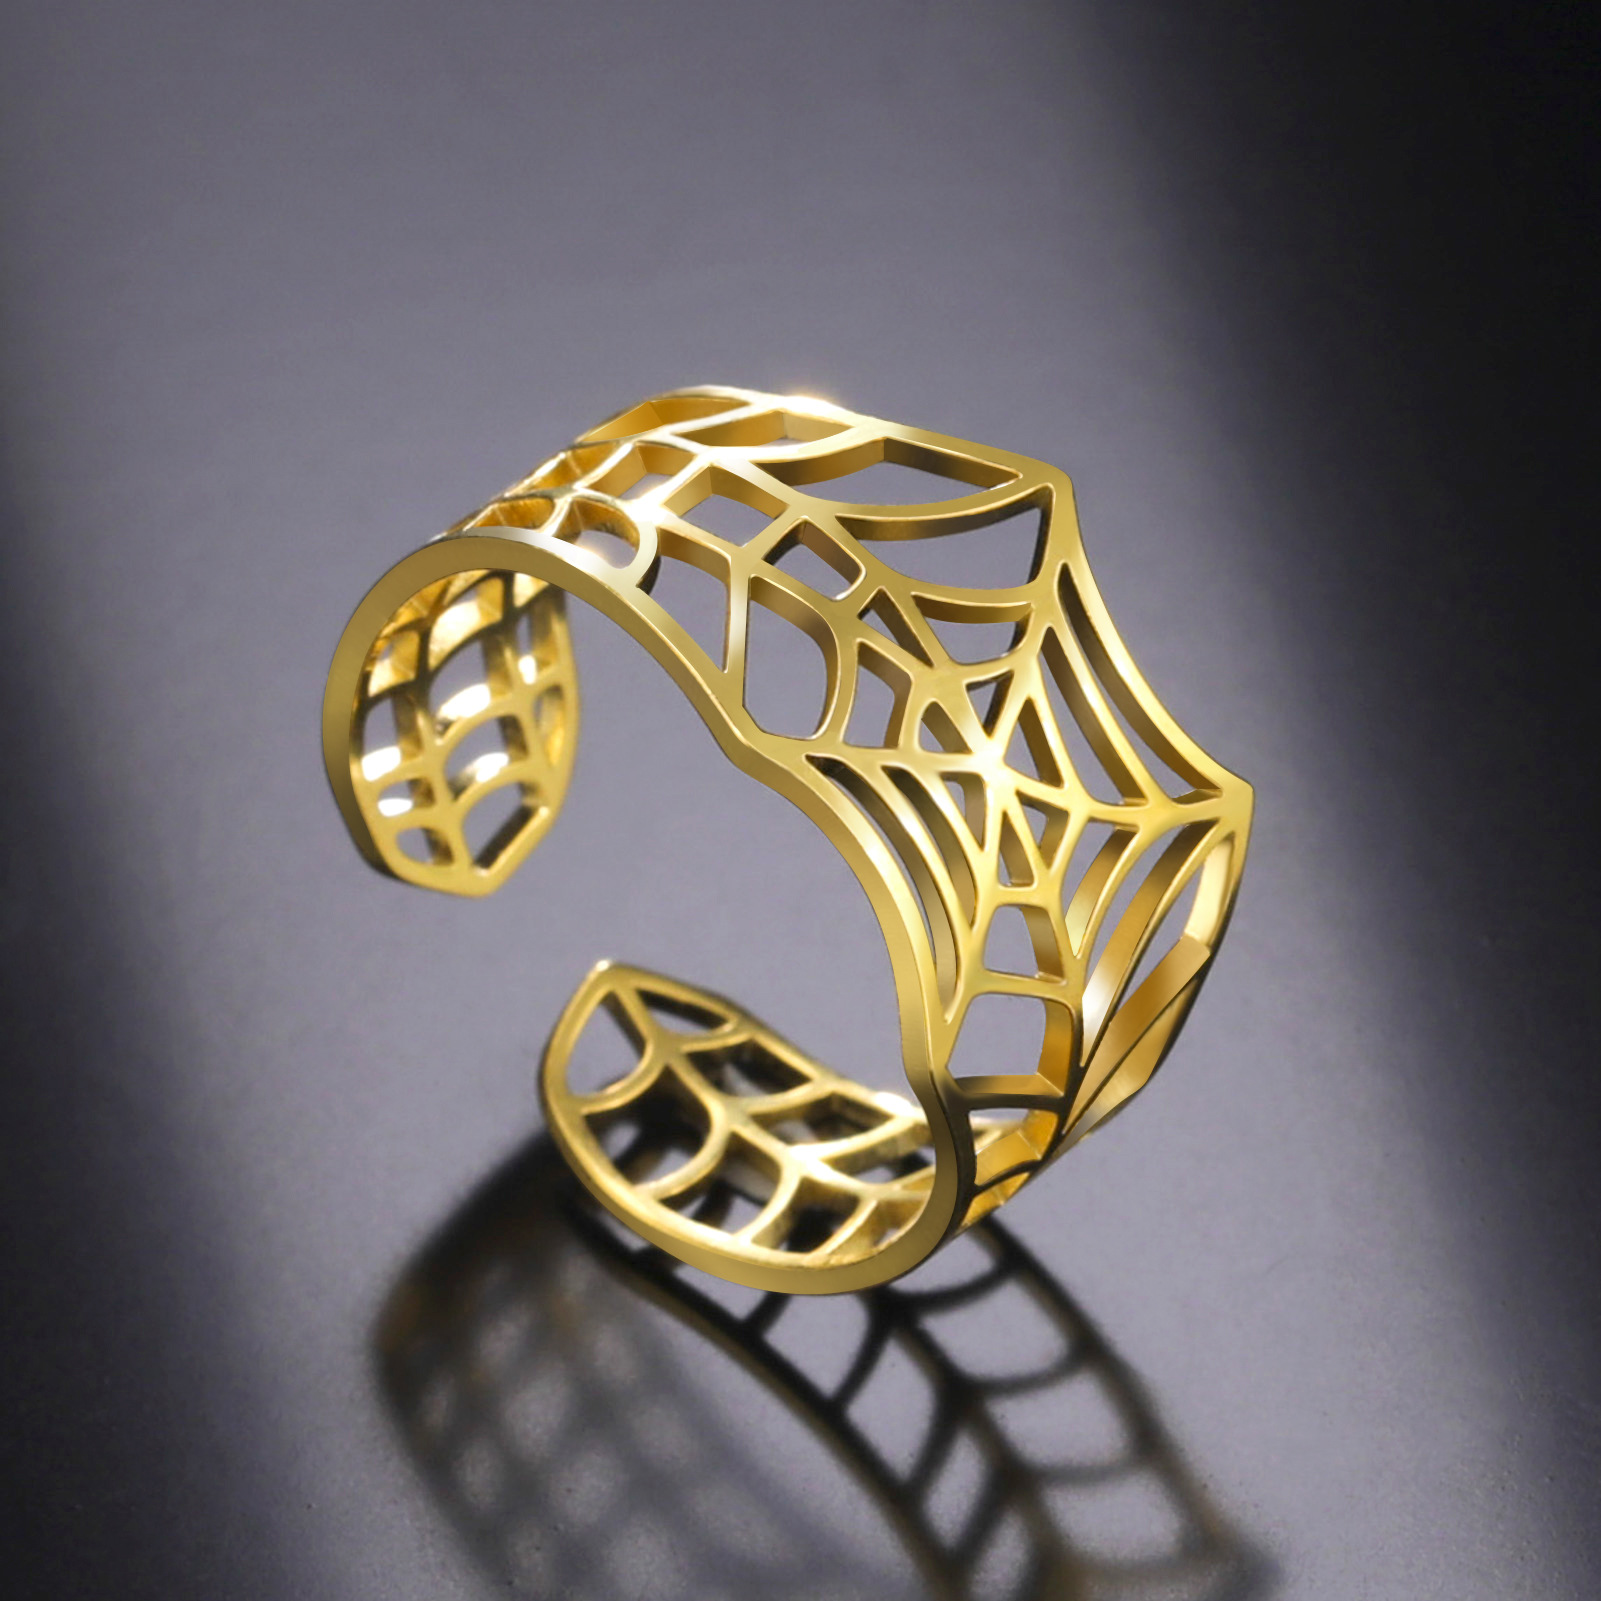 Örümcek adam yüzüğü Ayarlanabilir Açılabilir Paslanmaz Çelik Örümcek Web Ring Altın Kaplama Gümüş Renk Şık Mücevher Hediye Kutu Toptan ve Dropshipping Desteklenir